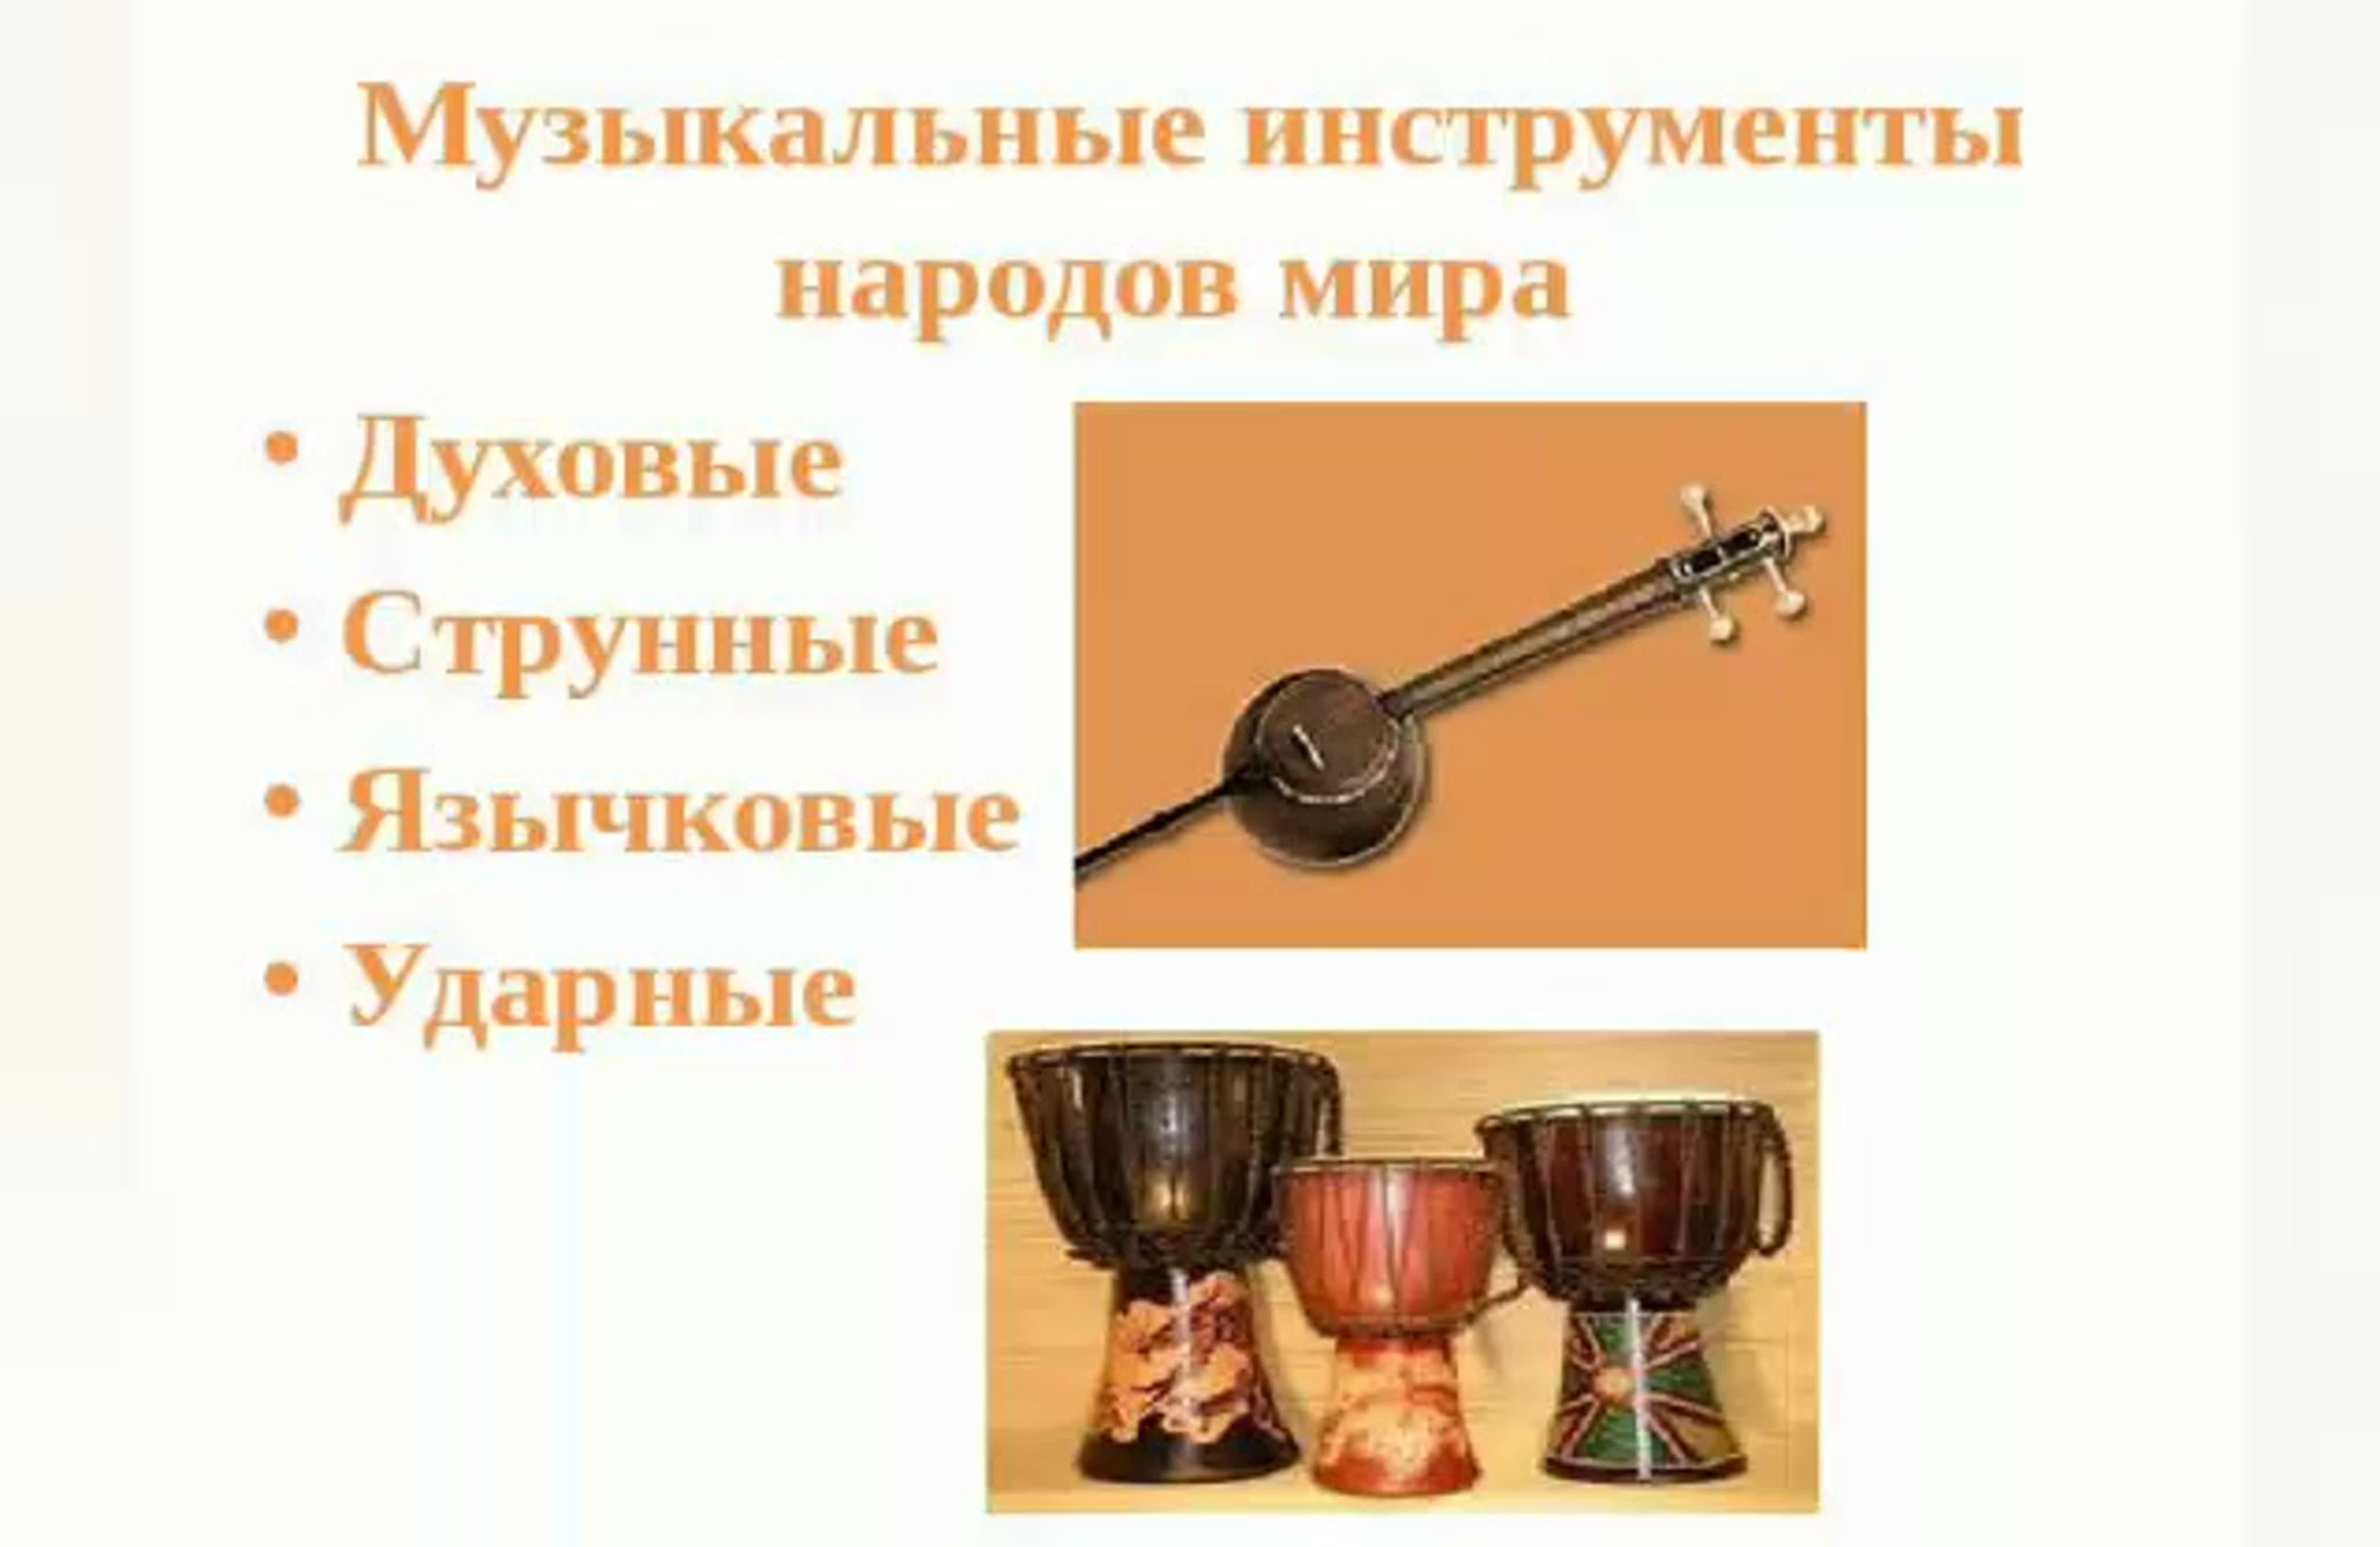 Музыкальный инструмент 1 из народов россии. Музыкальные инструменты разных народов. Струнные духовые ударные инструменты. Народные музыкальные инструменты.